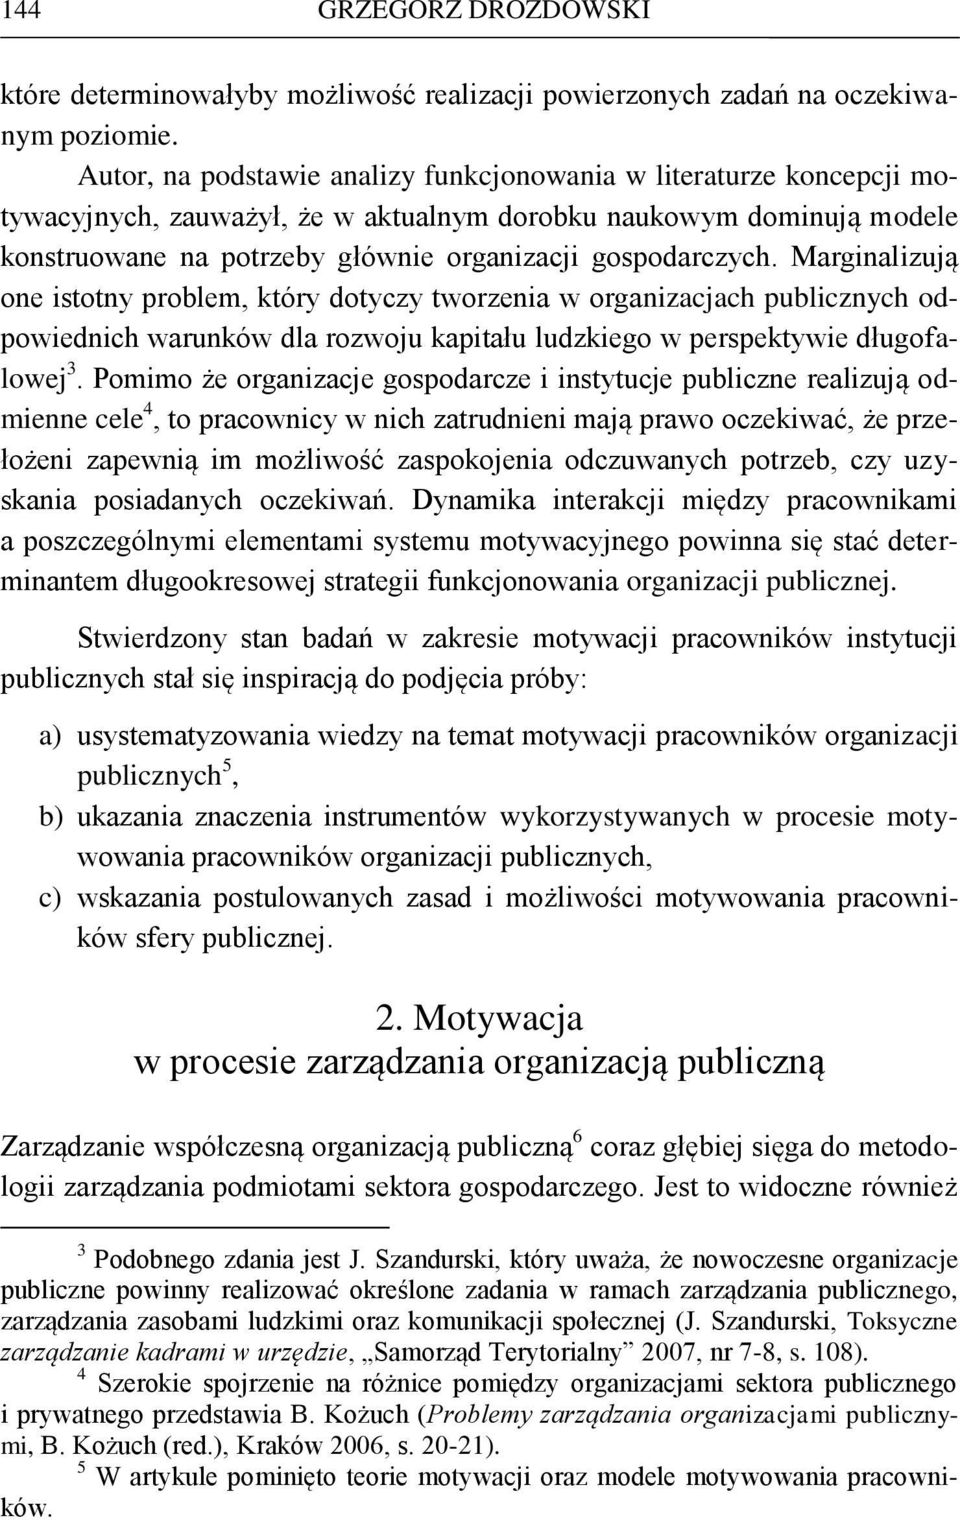 Motywowanie pracowników w organizacjach publicznych - PDF Free Download